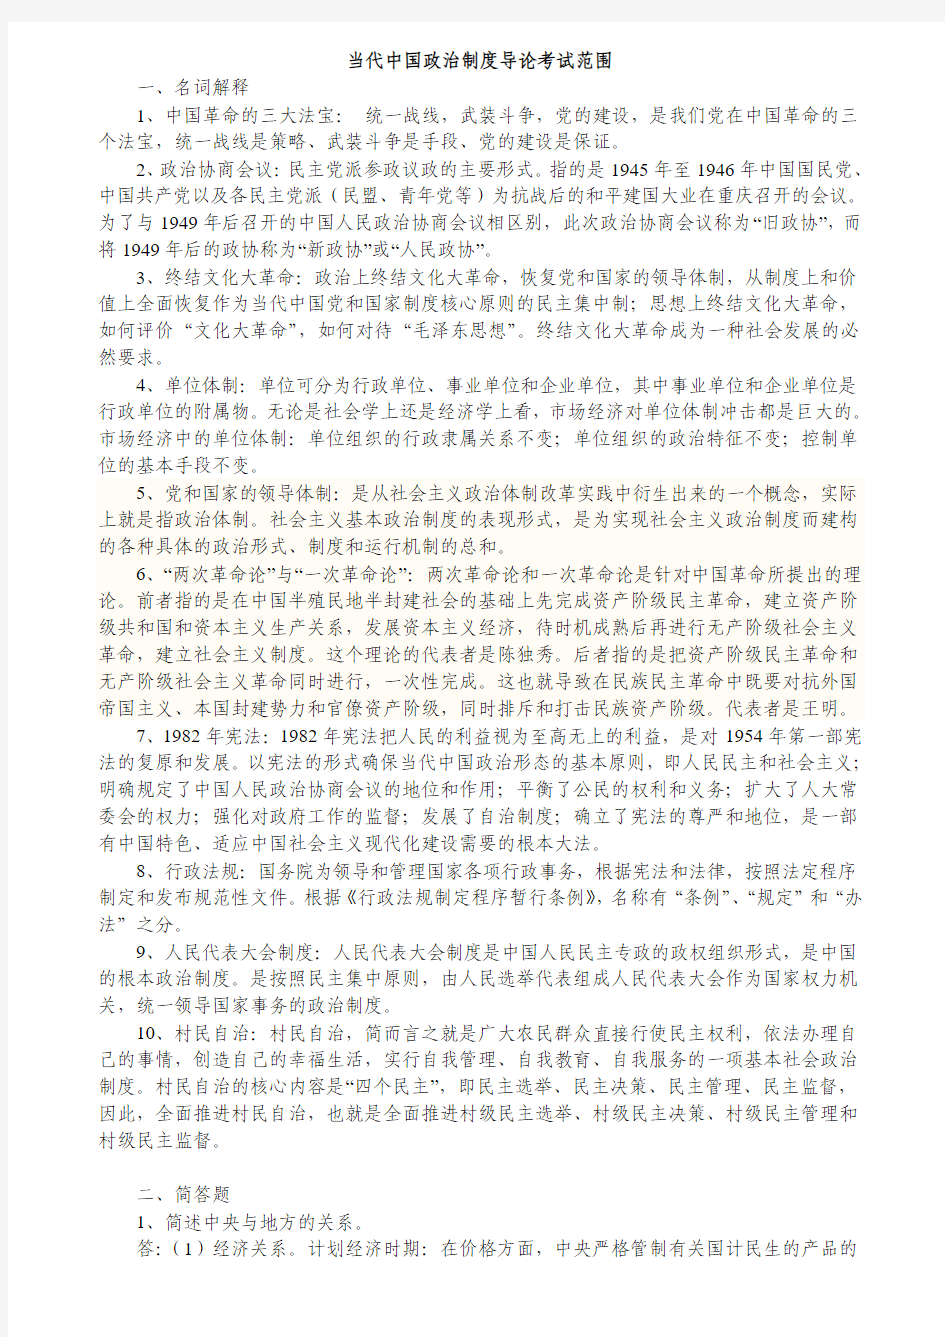 当代中国政治制度导论考试范围 (NEW)